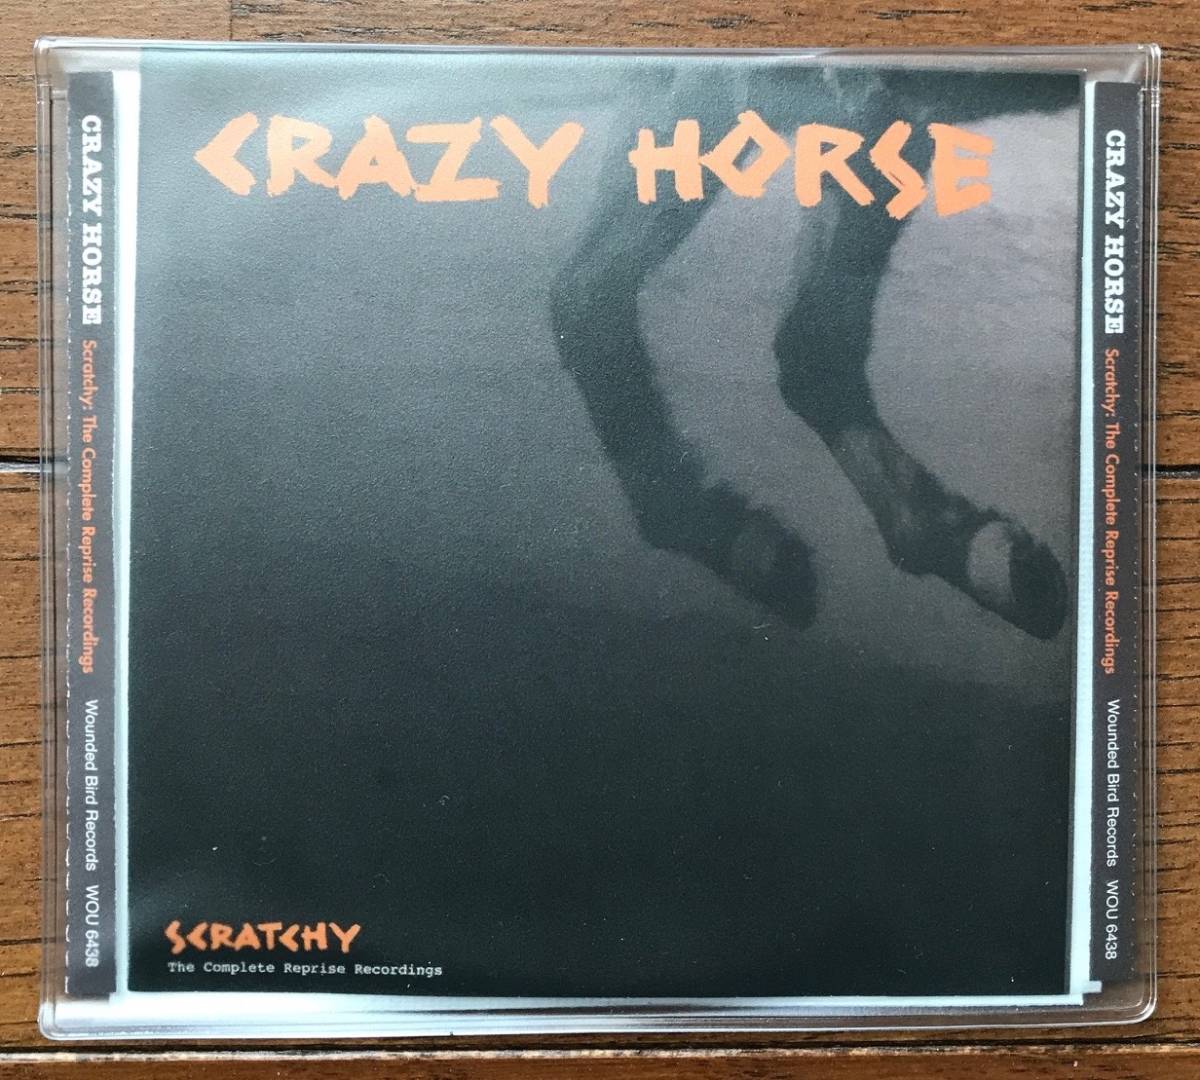 1432 / CD 2 листов комплект / CRAZY HORSE / Scratchy: The Complete Reprise Recordings / Reprise запись совершенно версия /k Lazy * шланг / прекрасный товар 